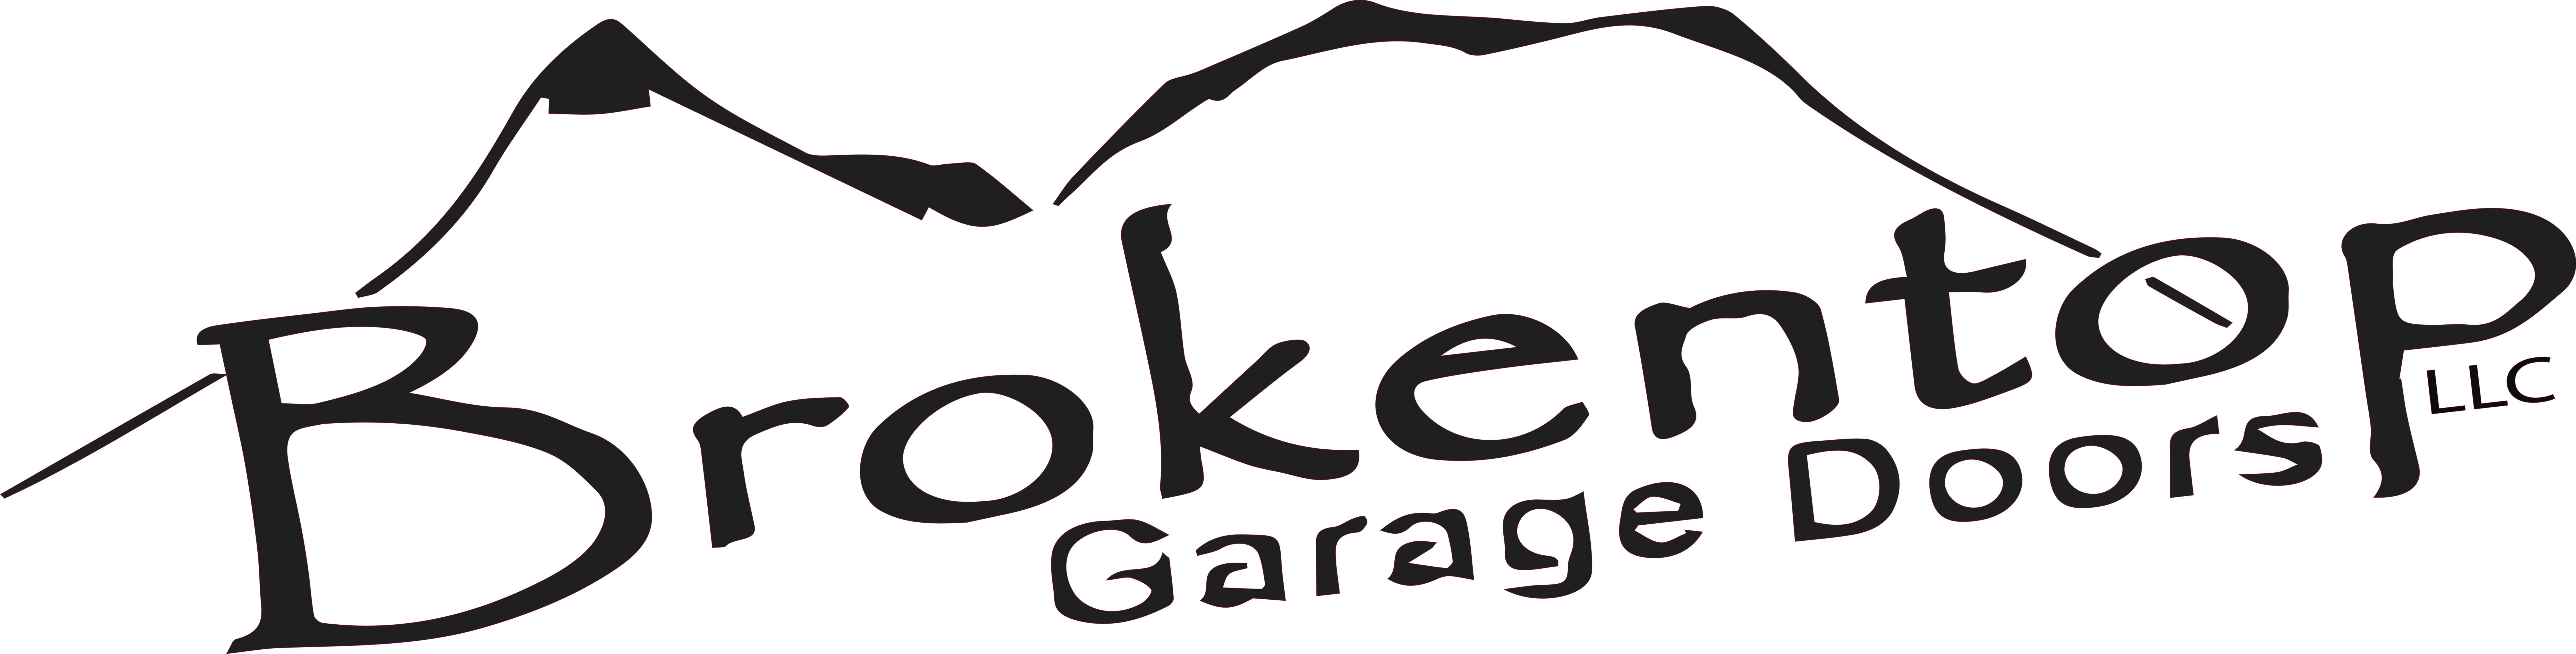 Garage Door Repair: Bend Oregon